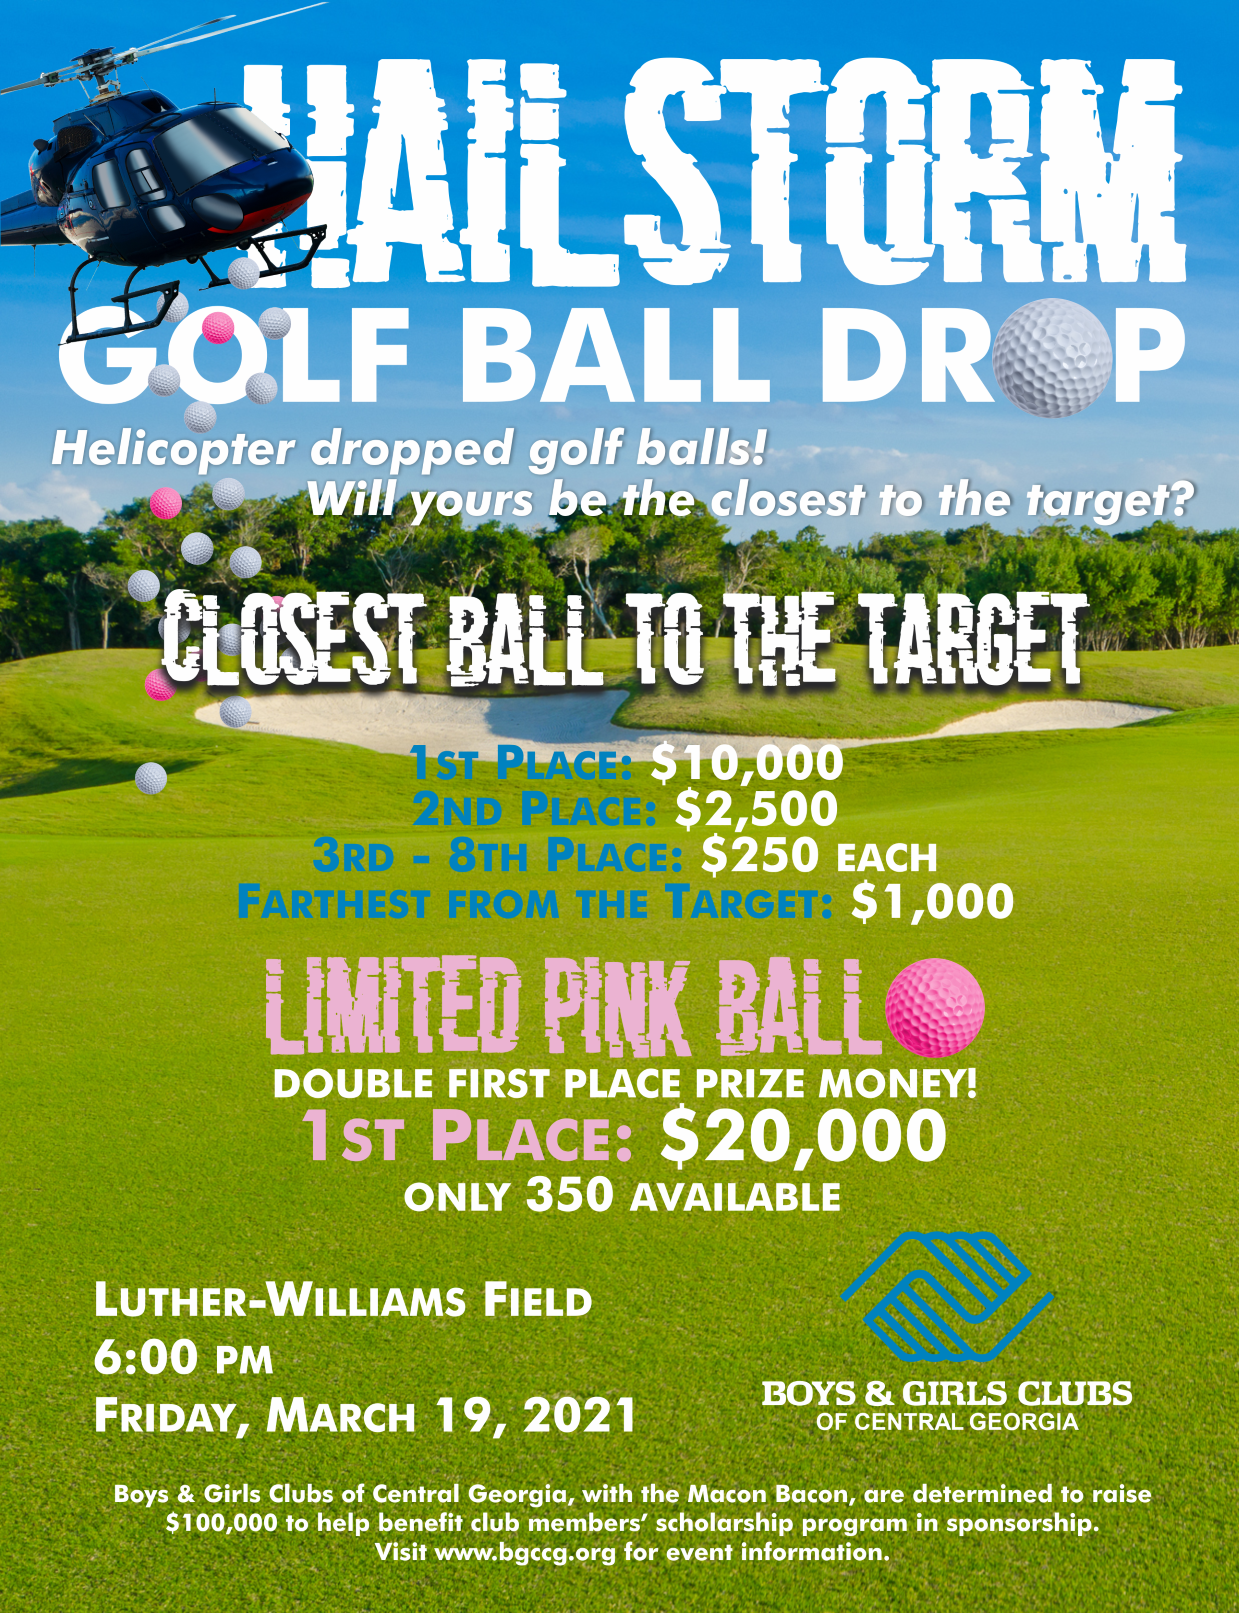 Hailstorm Golf Ball Drop